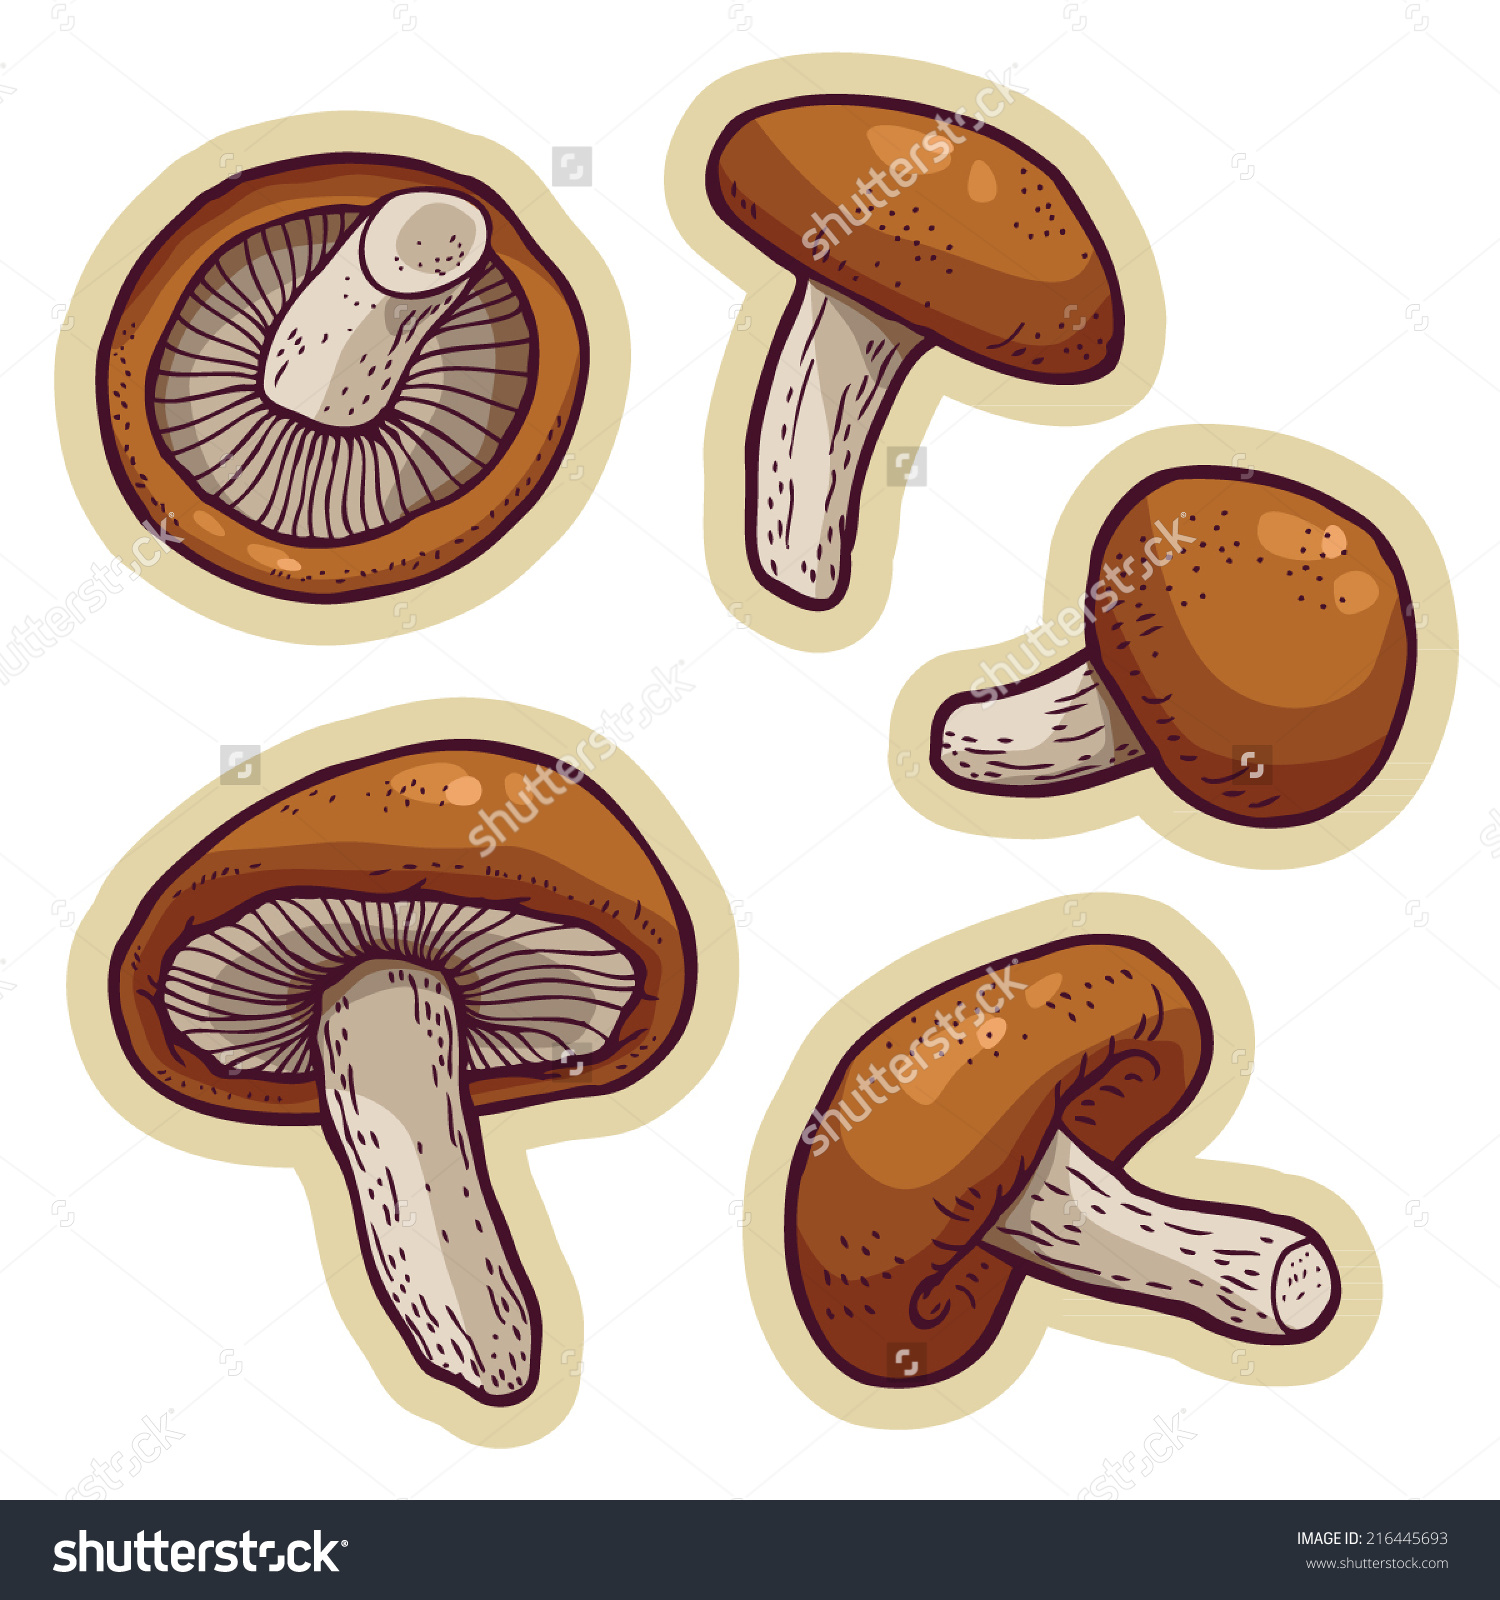 oyster mushroom clip art - photo #21